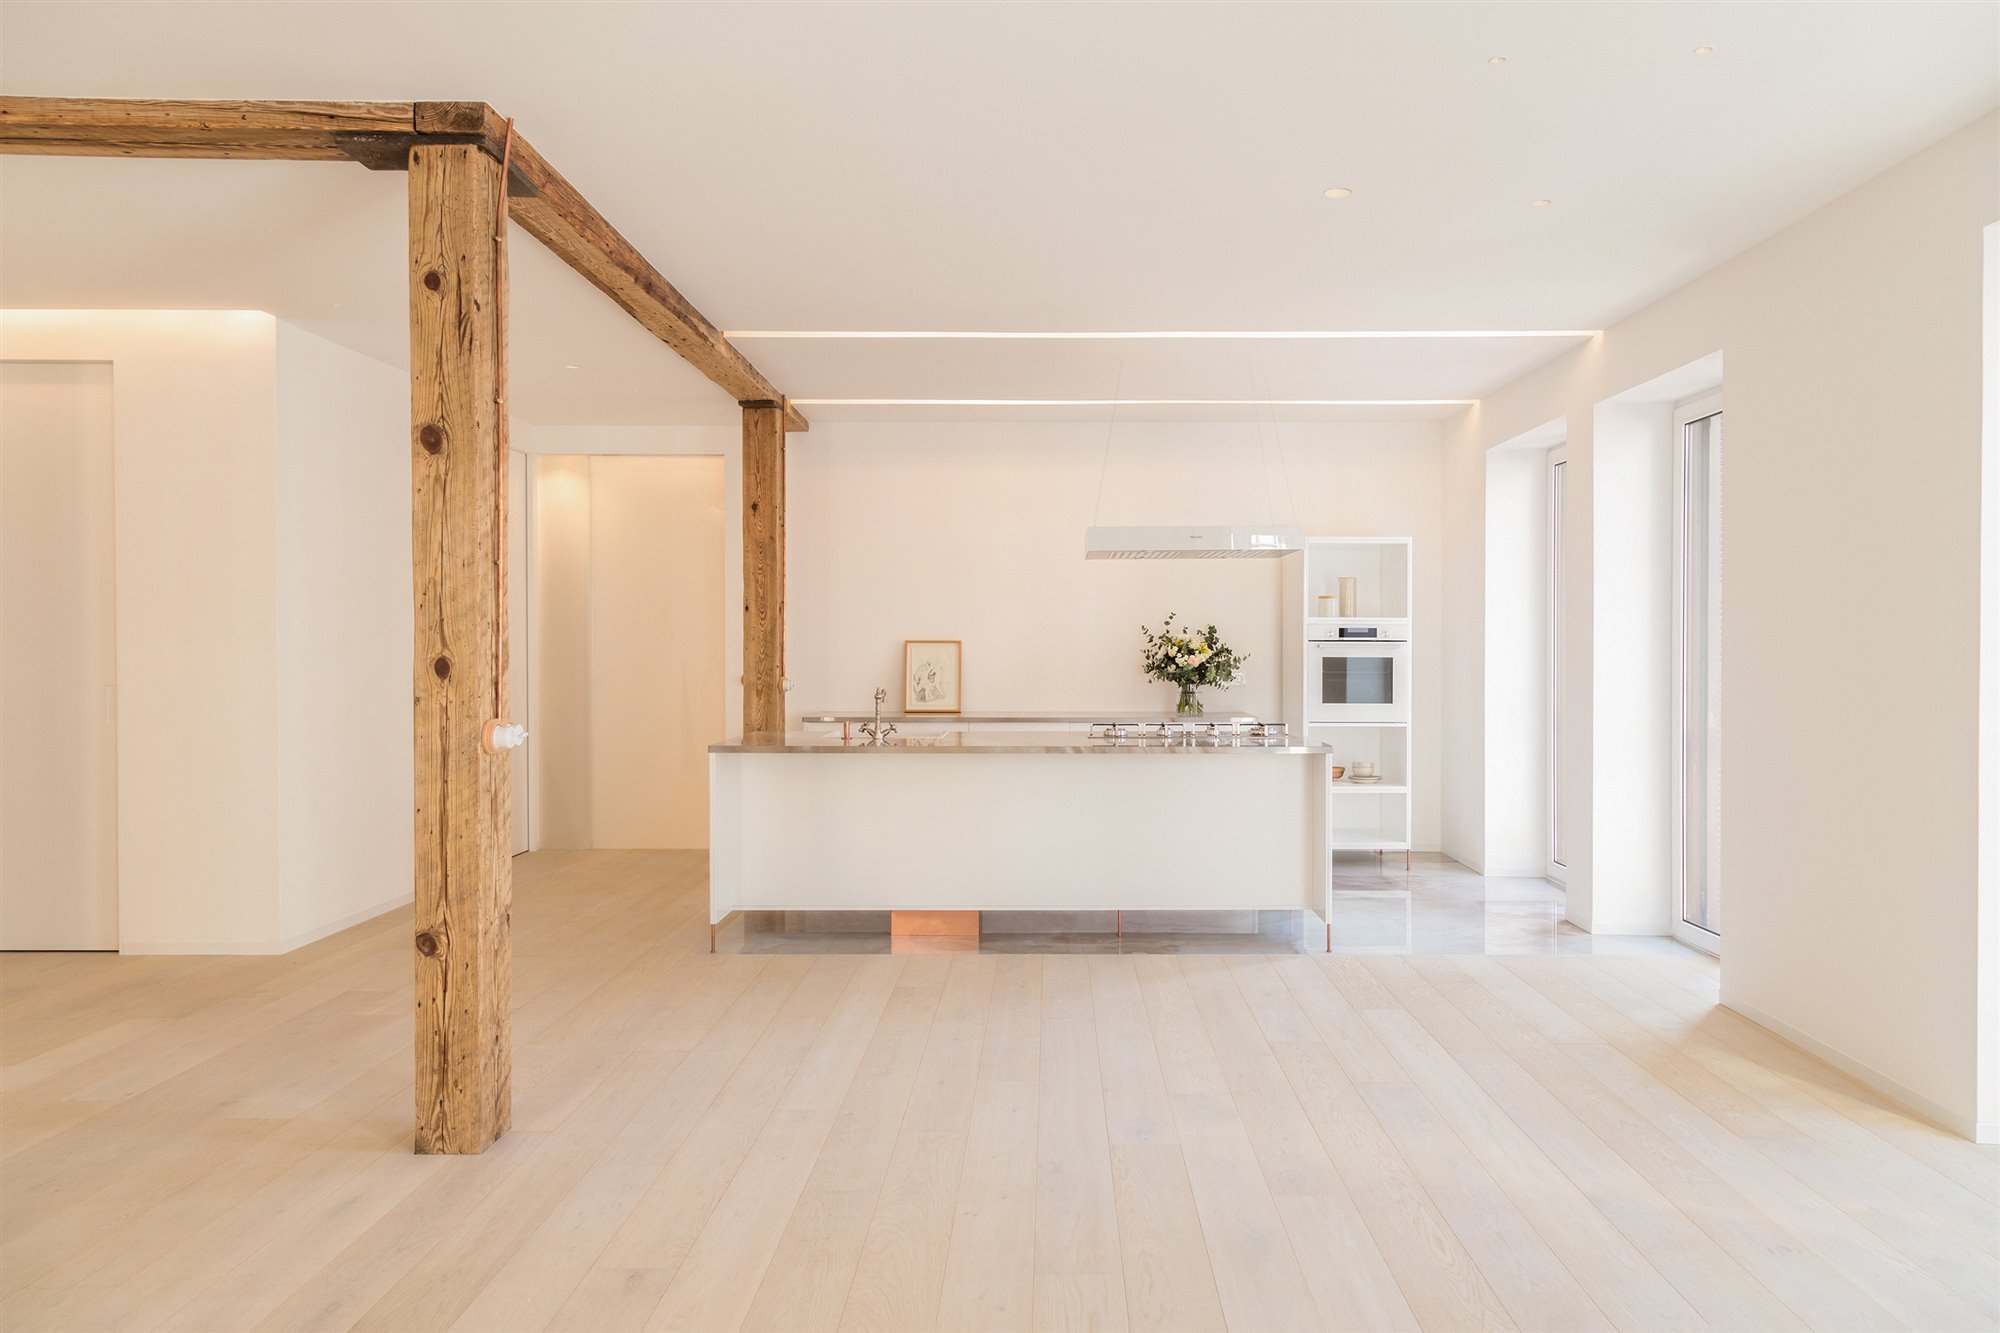 piso con cocina blanca y columna de madera original